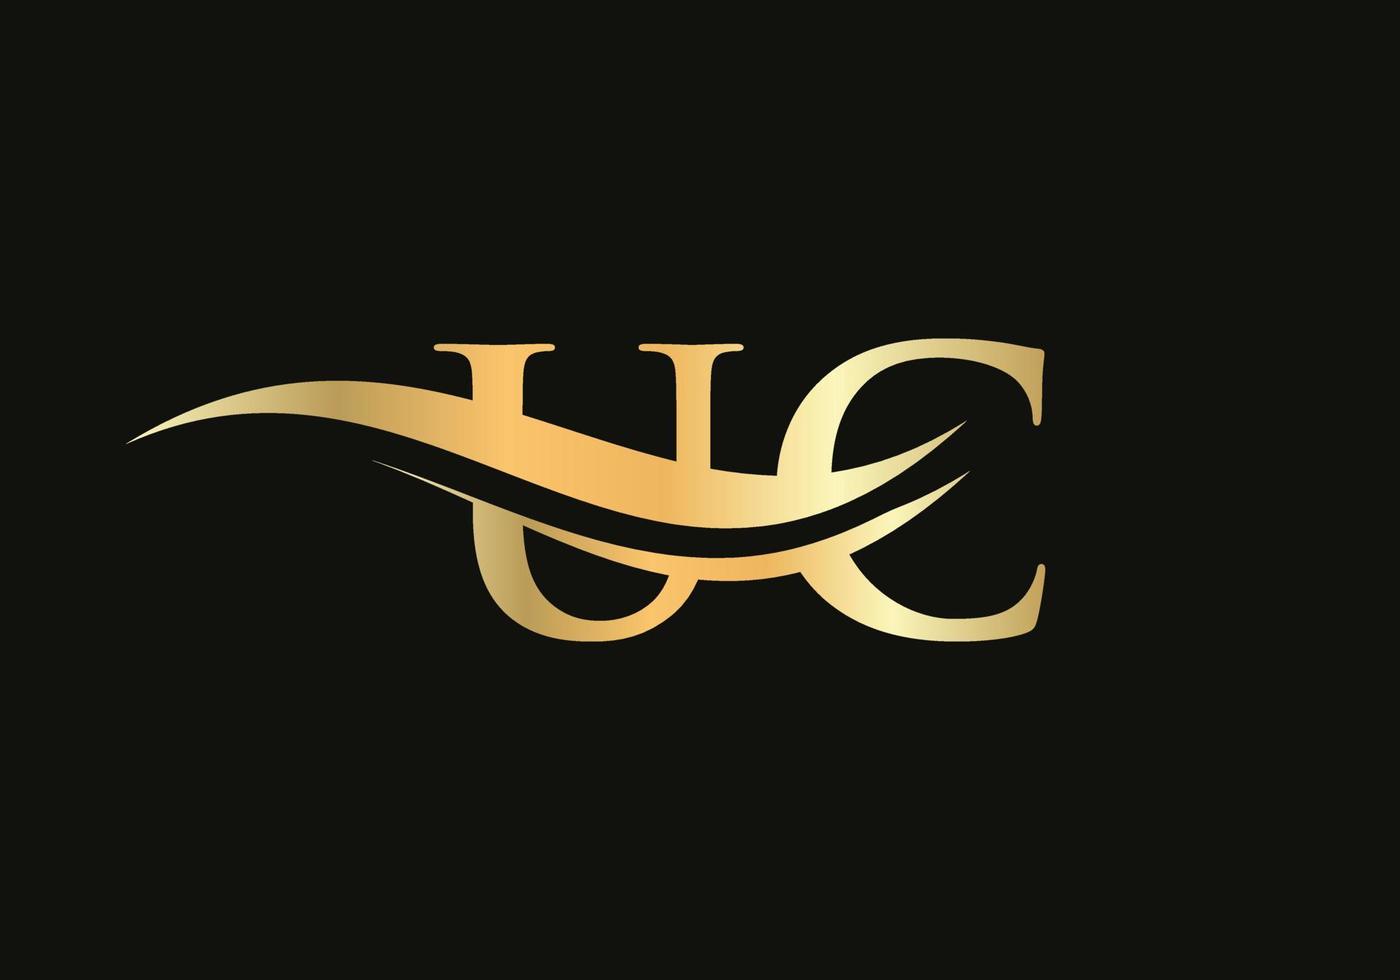 création initiale du logo uc en lettre d'or. création de logo uc à la mode moderne vecteur